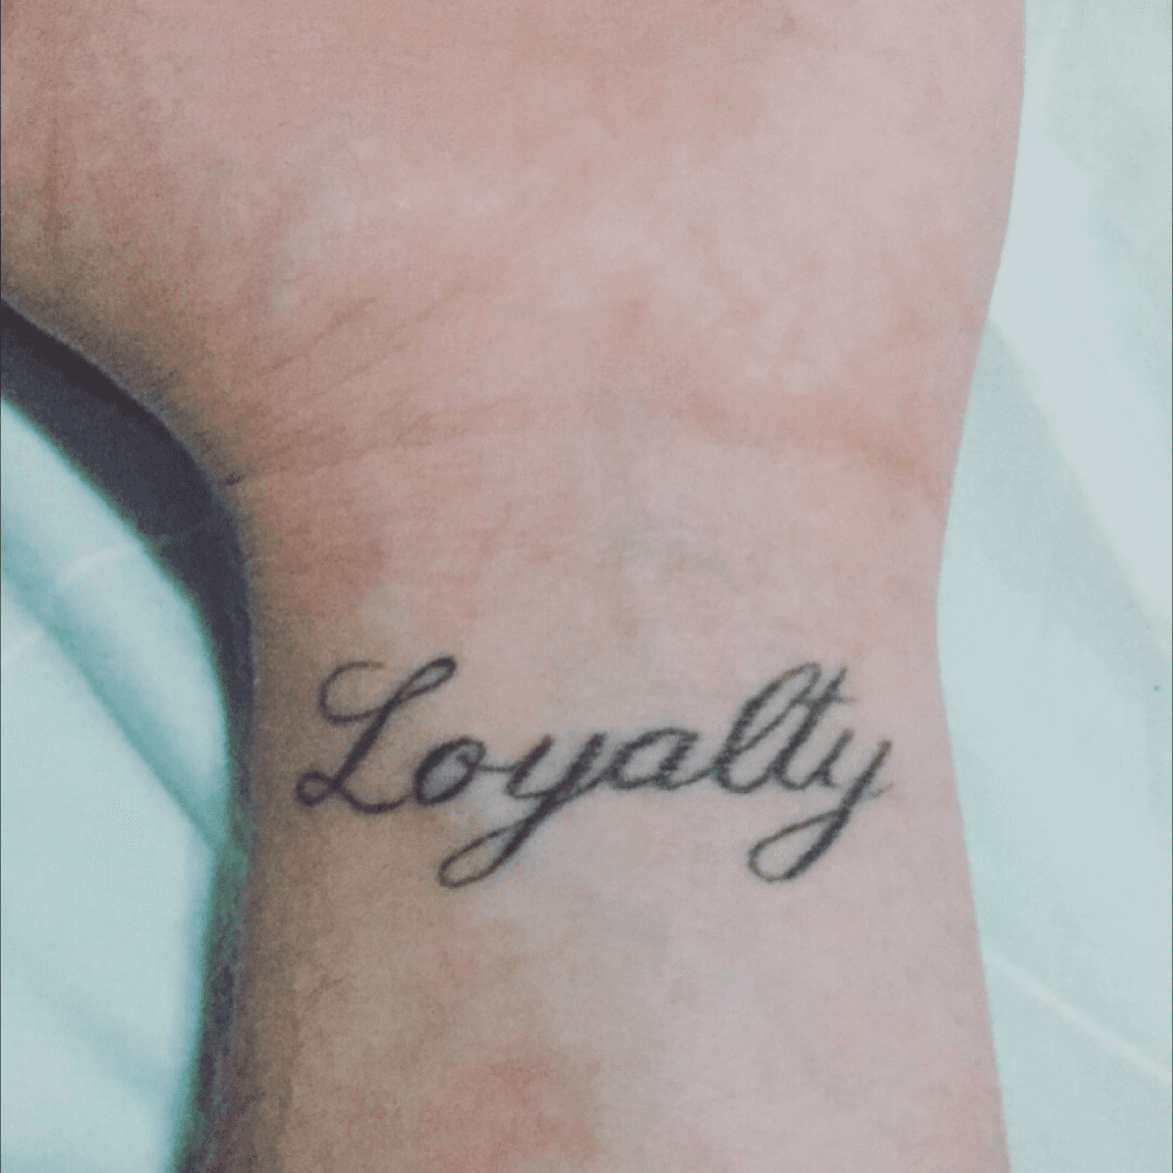 XiouzTv on Twitter Loyalität loyalty tattoo standhaft  httpstco9mCFhZKiax  Twitter